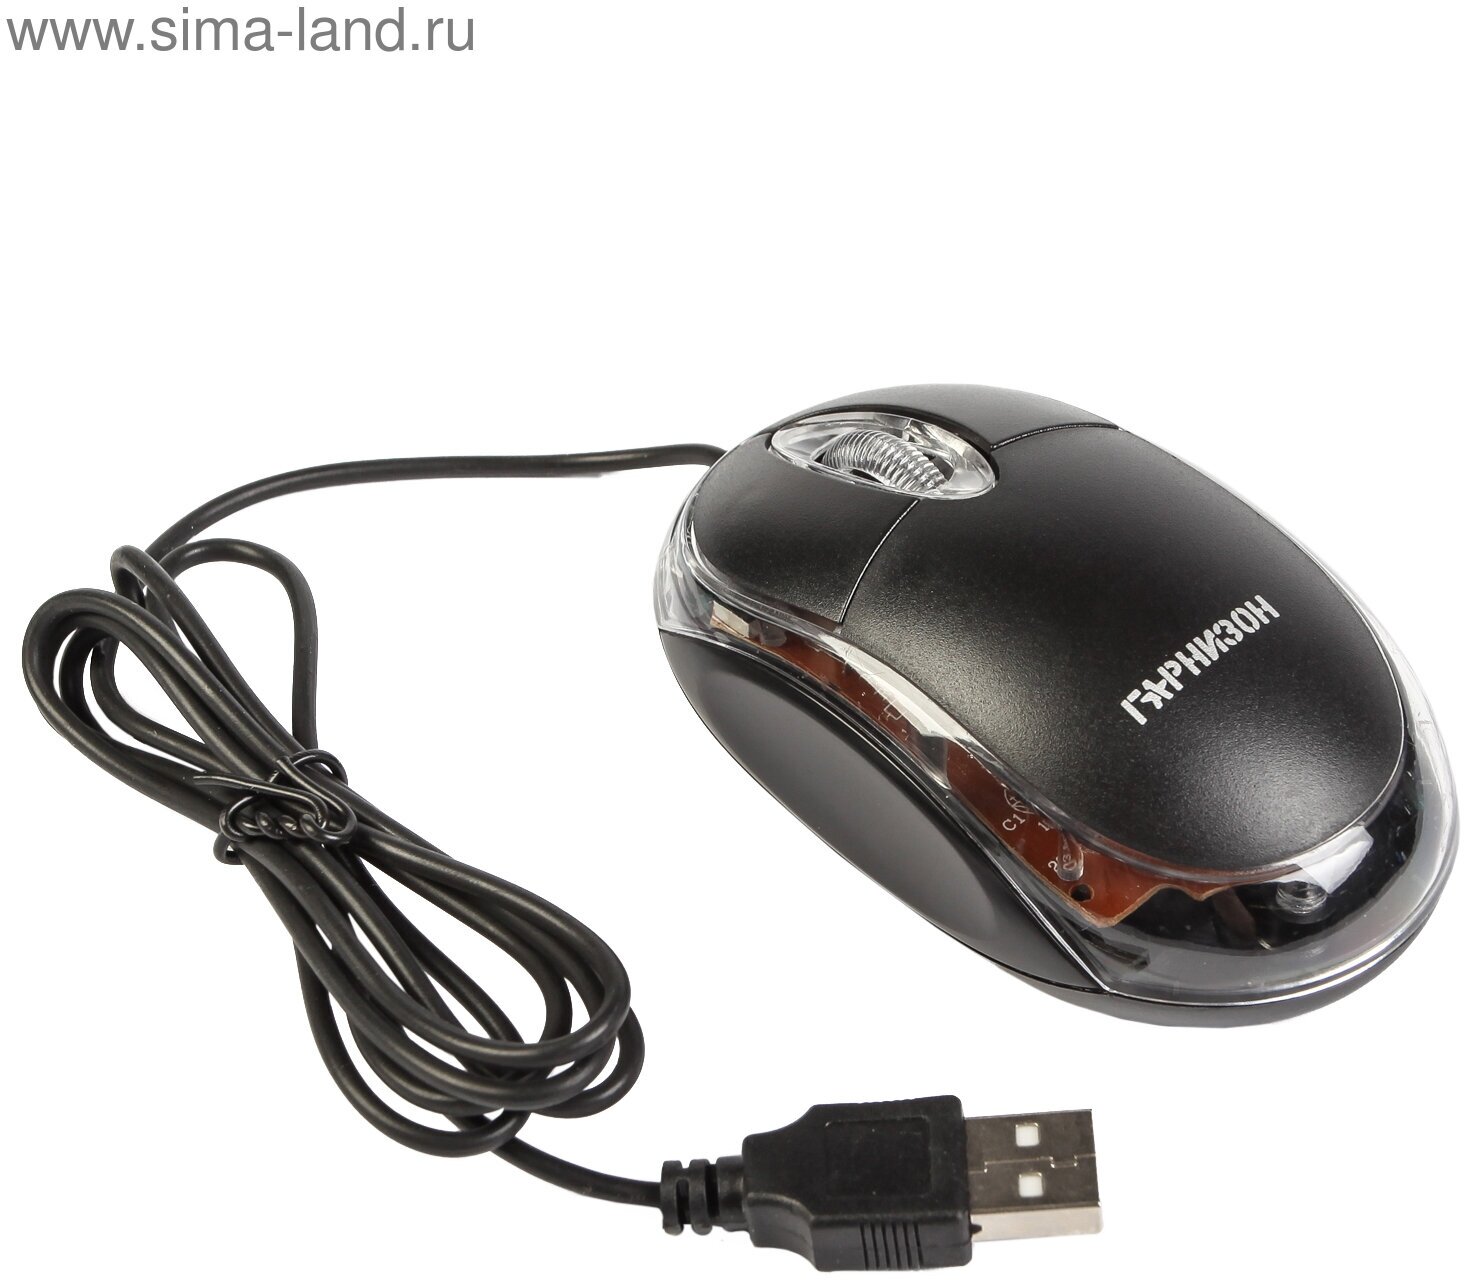 Мышь GM-100, проводная, оптическая, 1000 dpi, USB, чёрная